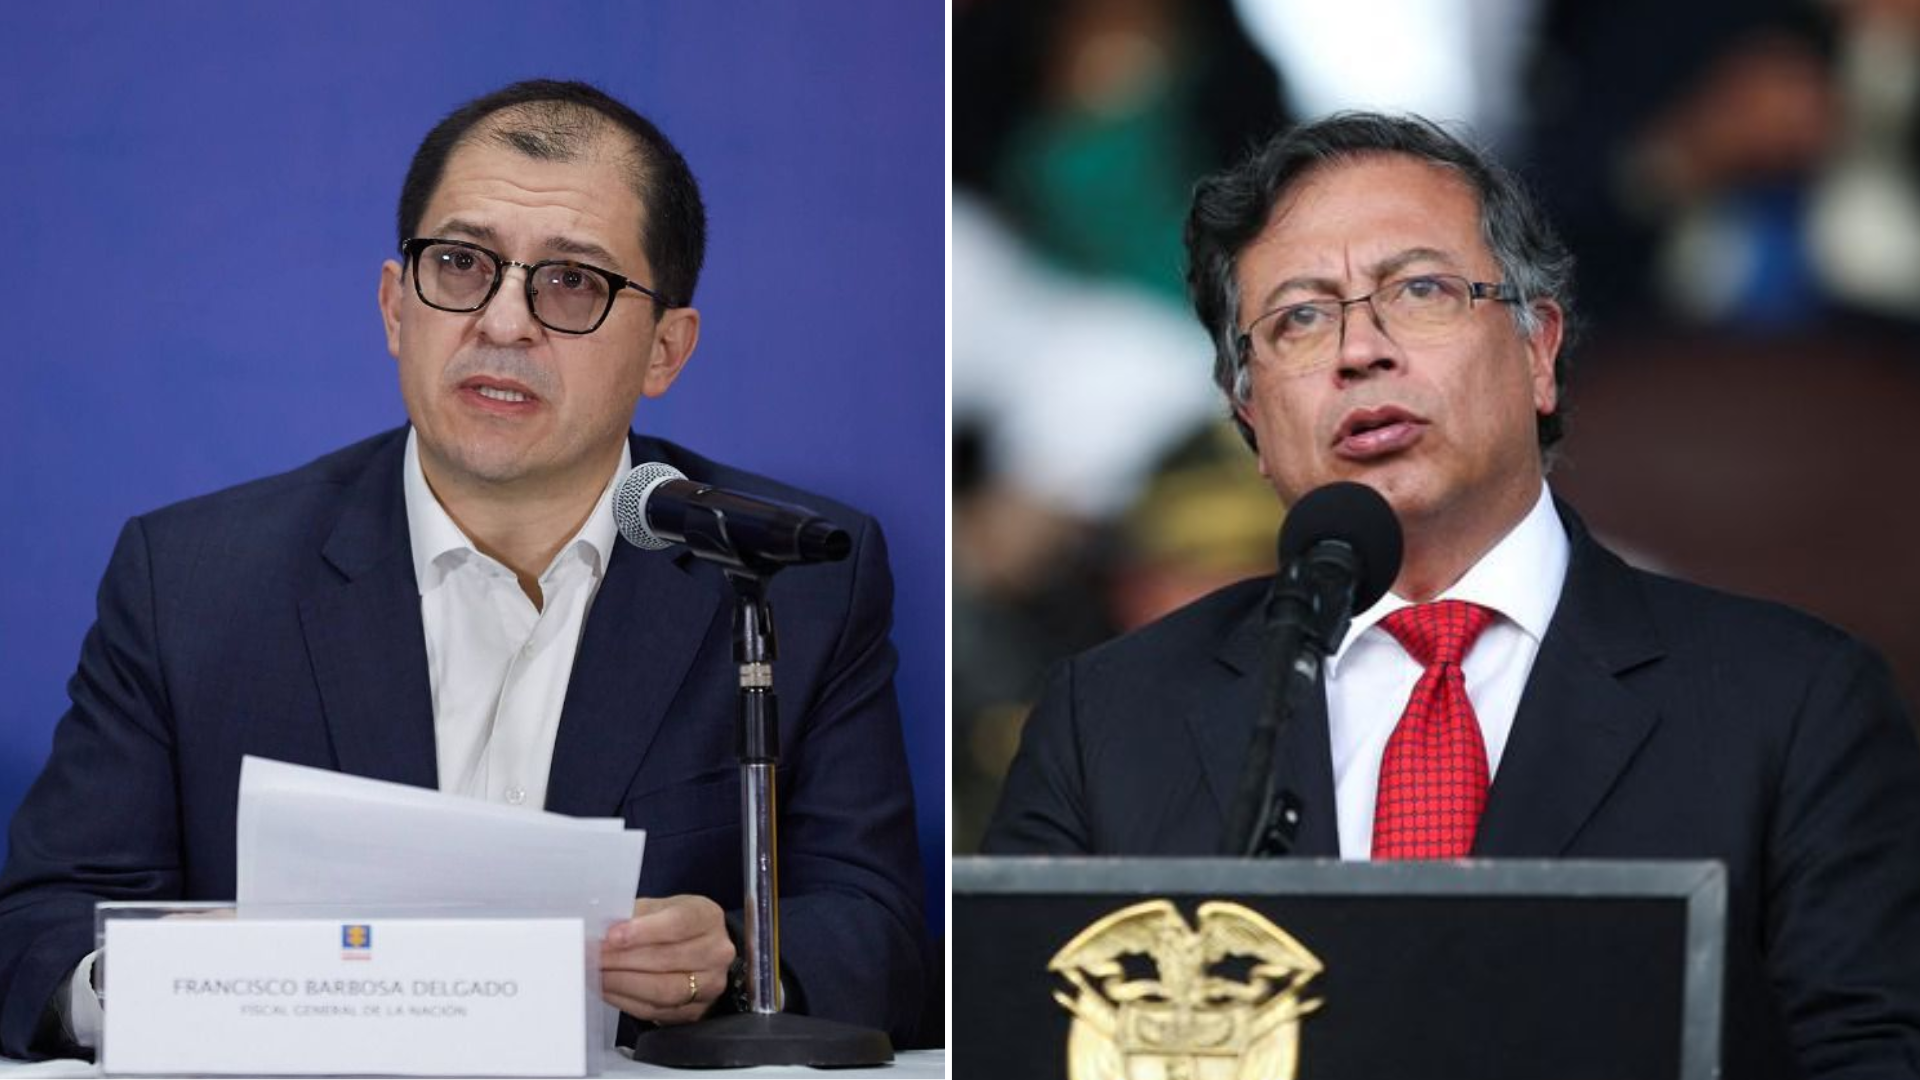 El fiscal Francisco Barbosa se siente engañado con la la Ley de Sometimiento del Gobierno: “Dejaron observaciones sin cumplir”